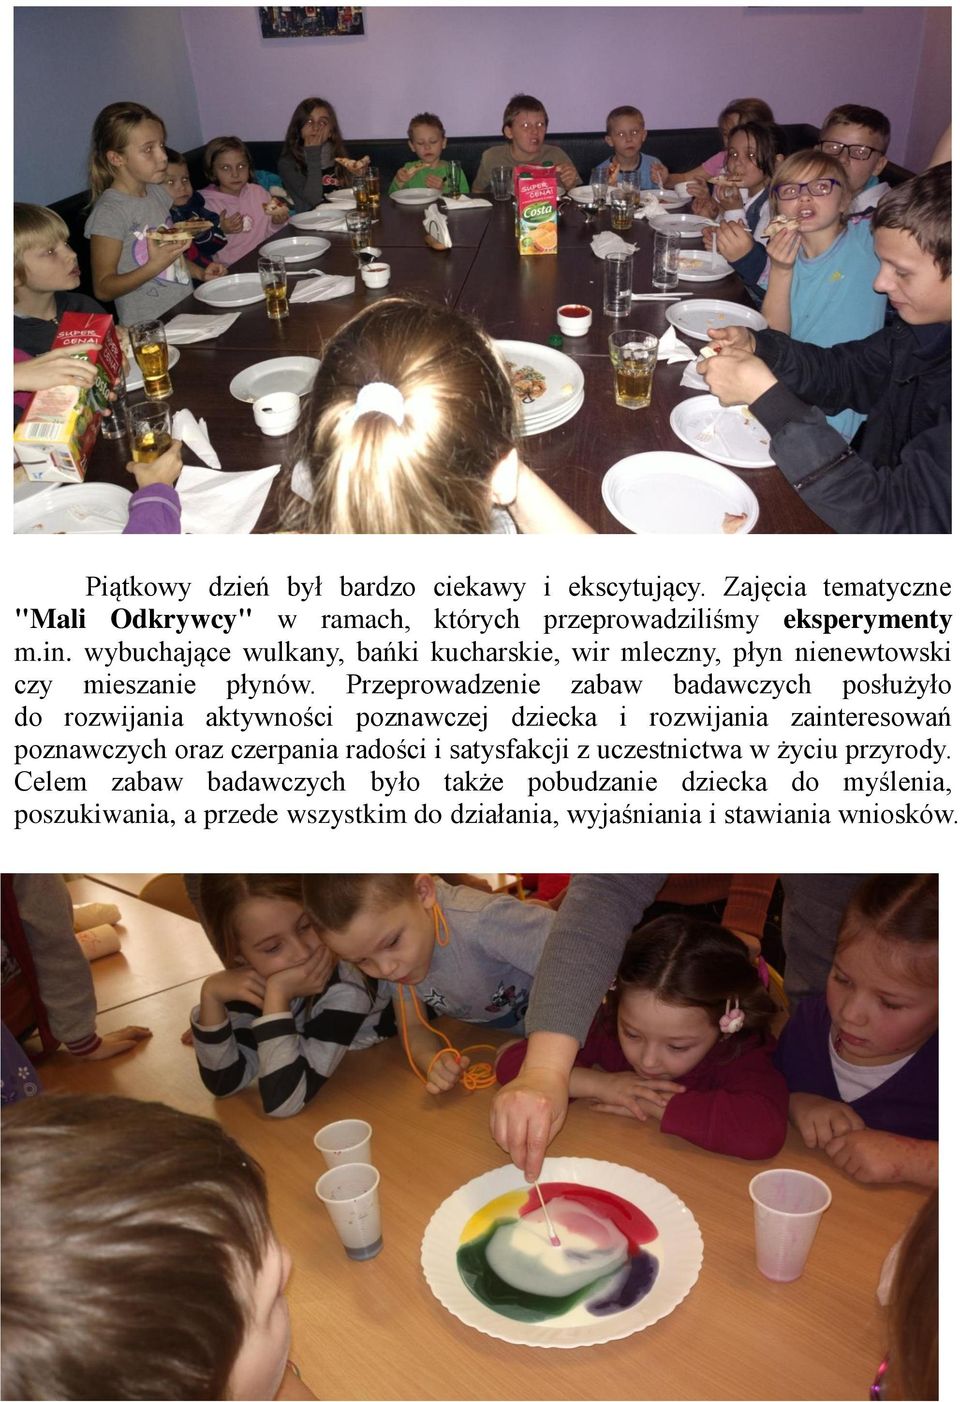 Przeprowadzenie zabaw badawczych posłużyło do rozwijania aktywności poznawczej dziecka i rozwijania zainteresowań poznawczych oraz czerpania